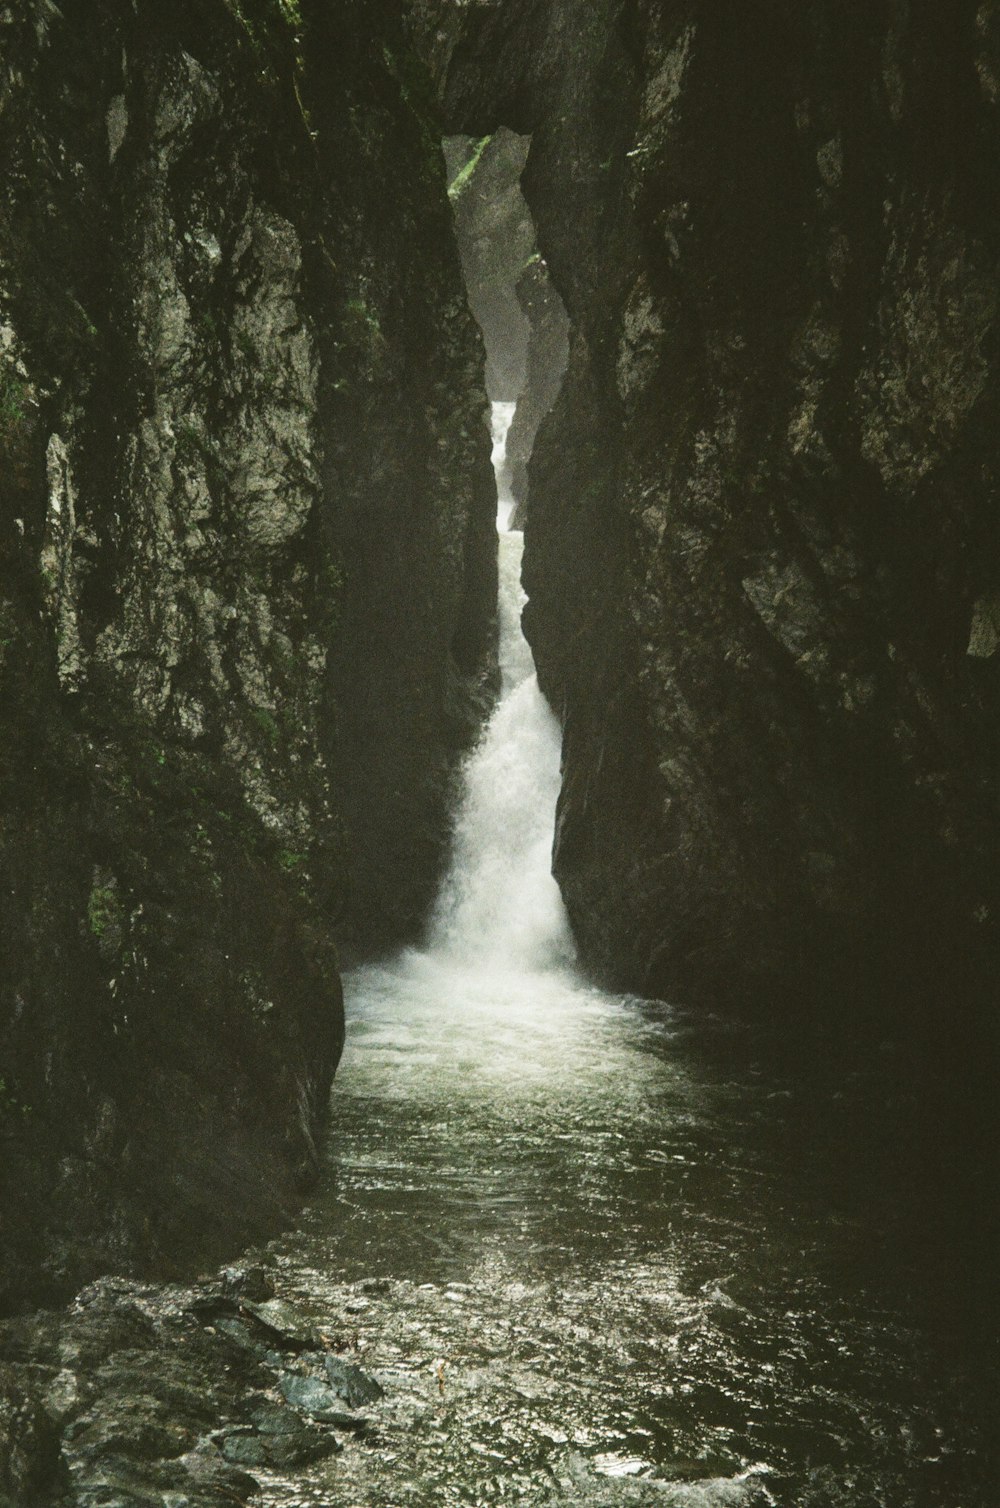 Un río estrecho que fluye entre dos grandes rocas